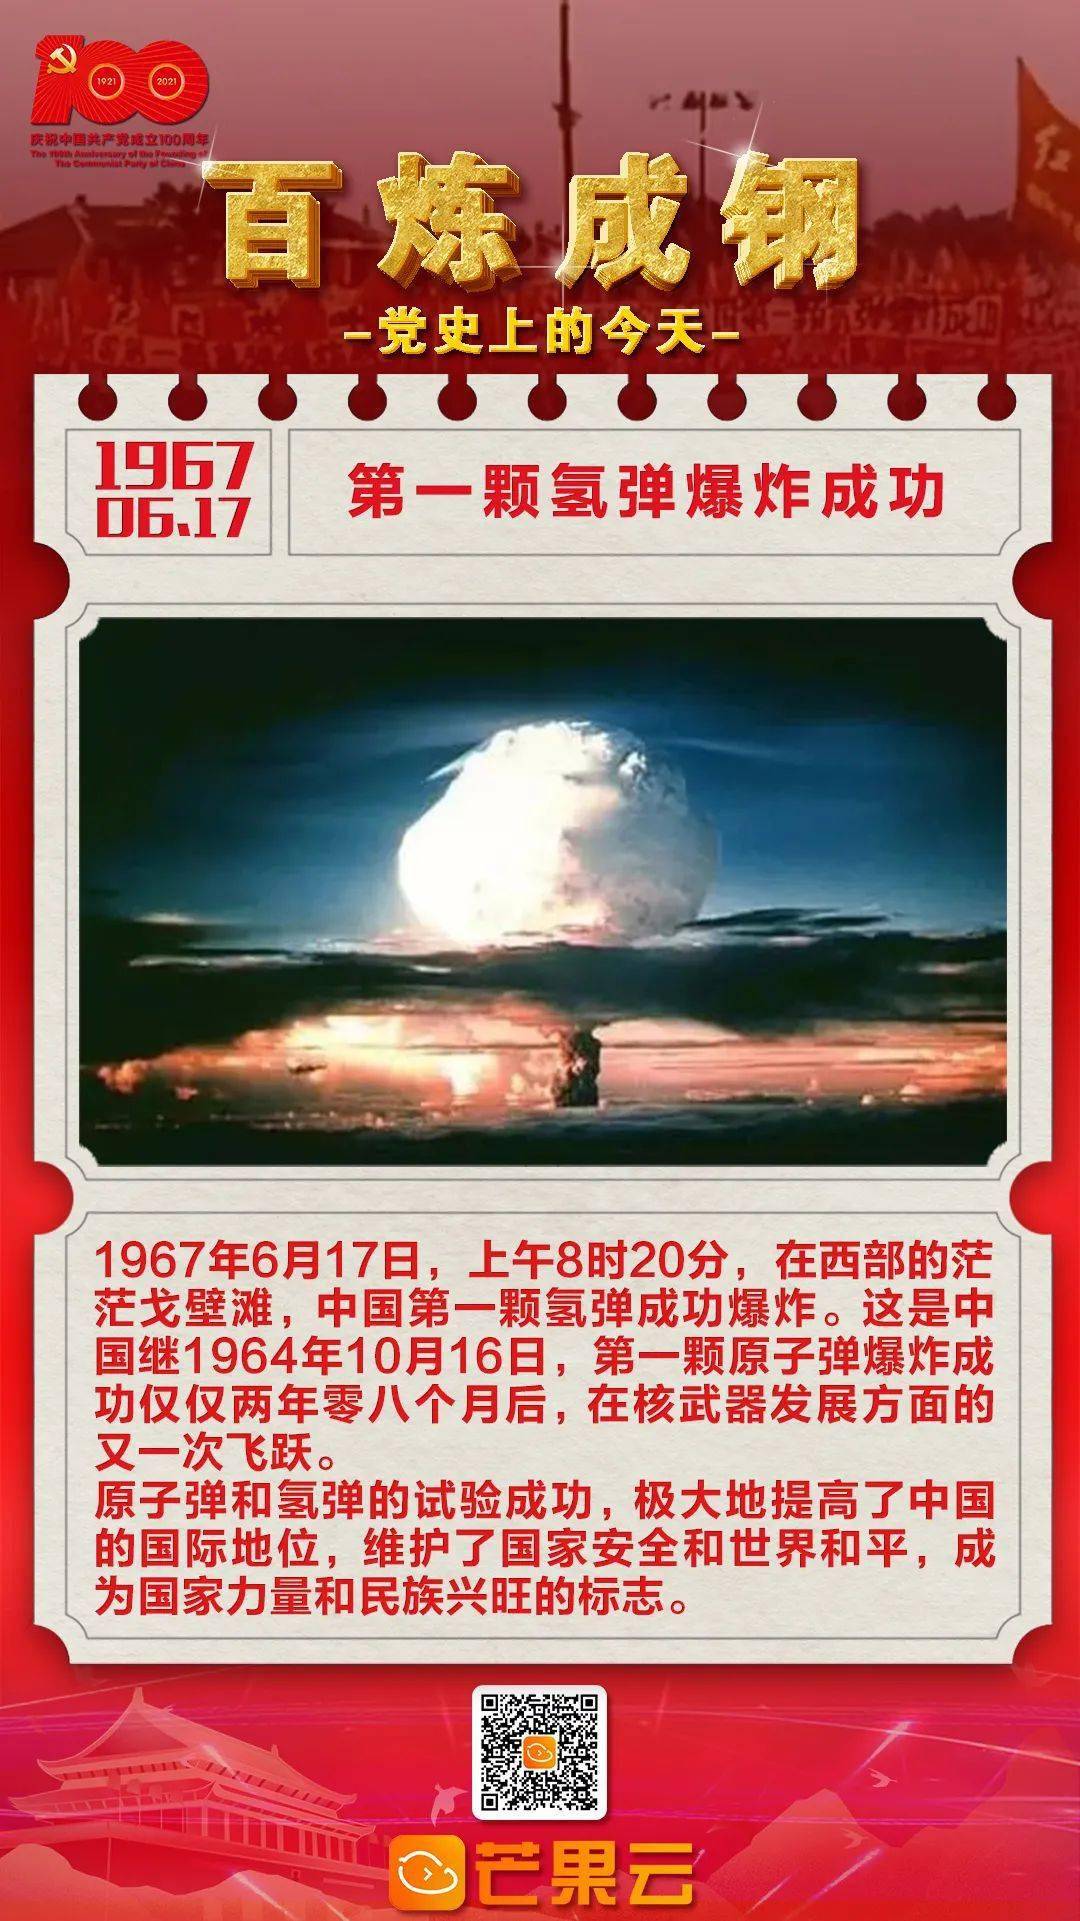 百炼成钢·党史上的今天:1967年6月17日,第一颗氢弹爆炸成功